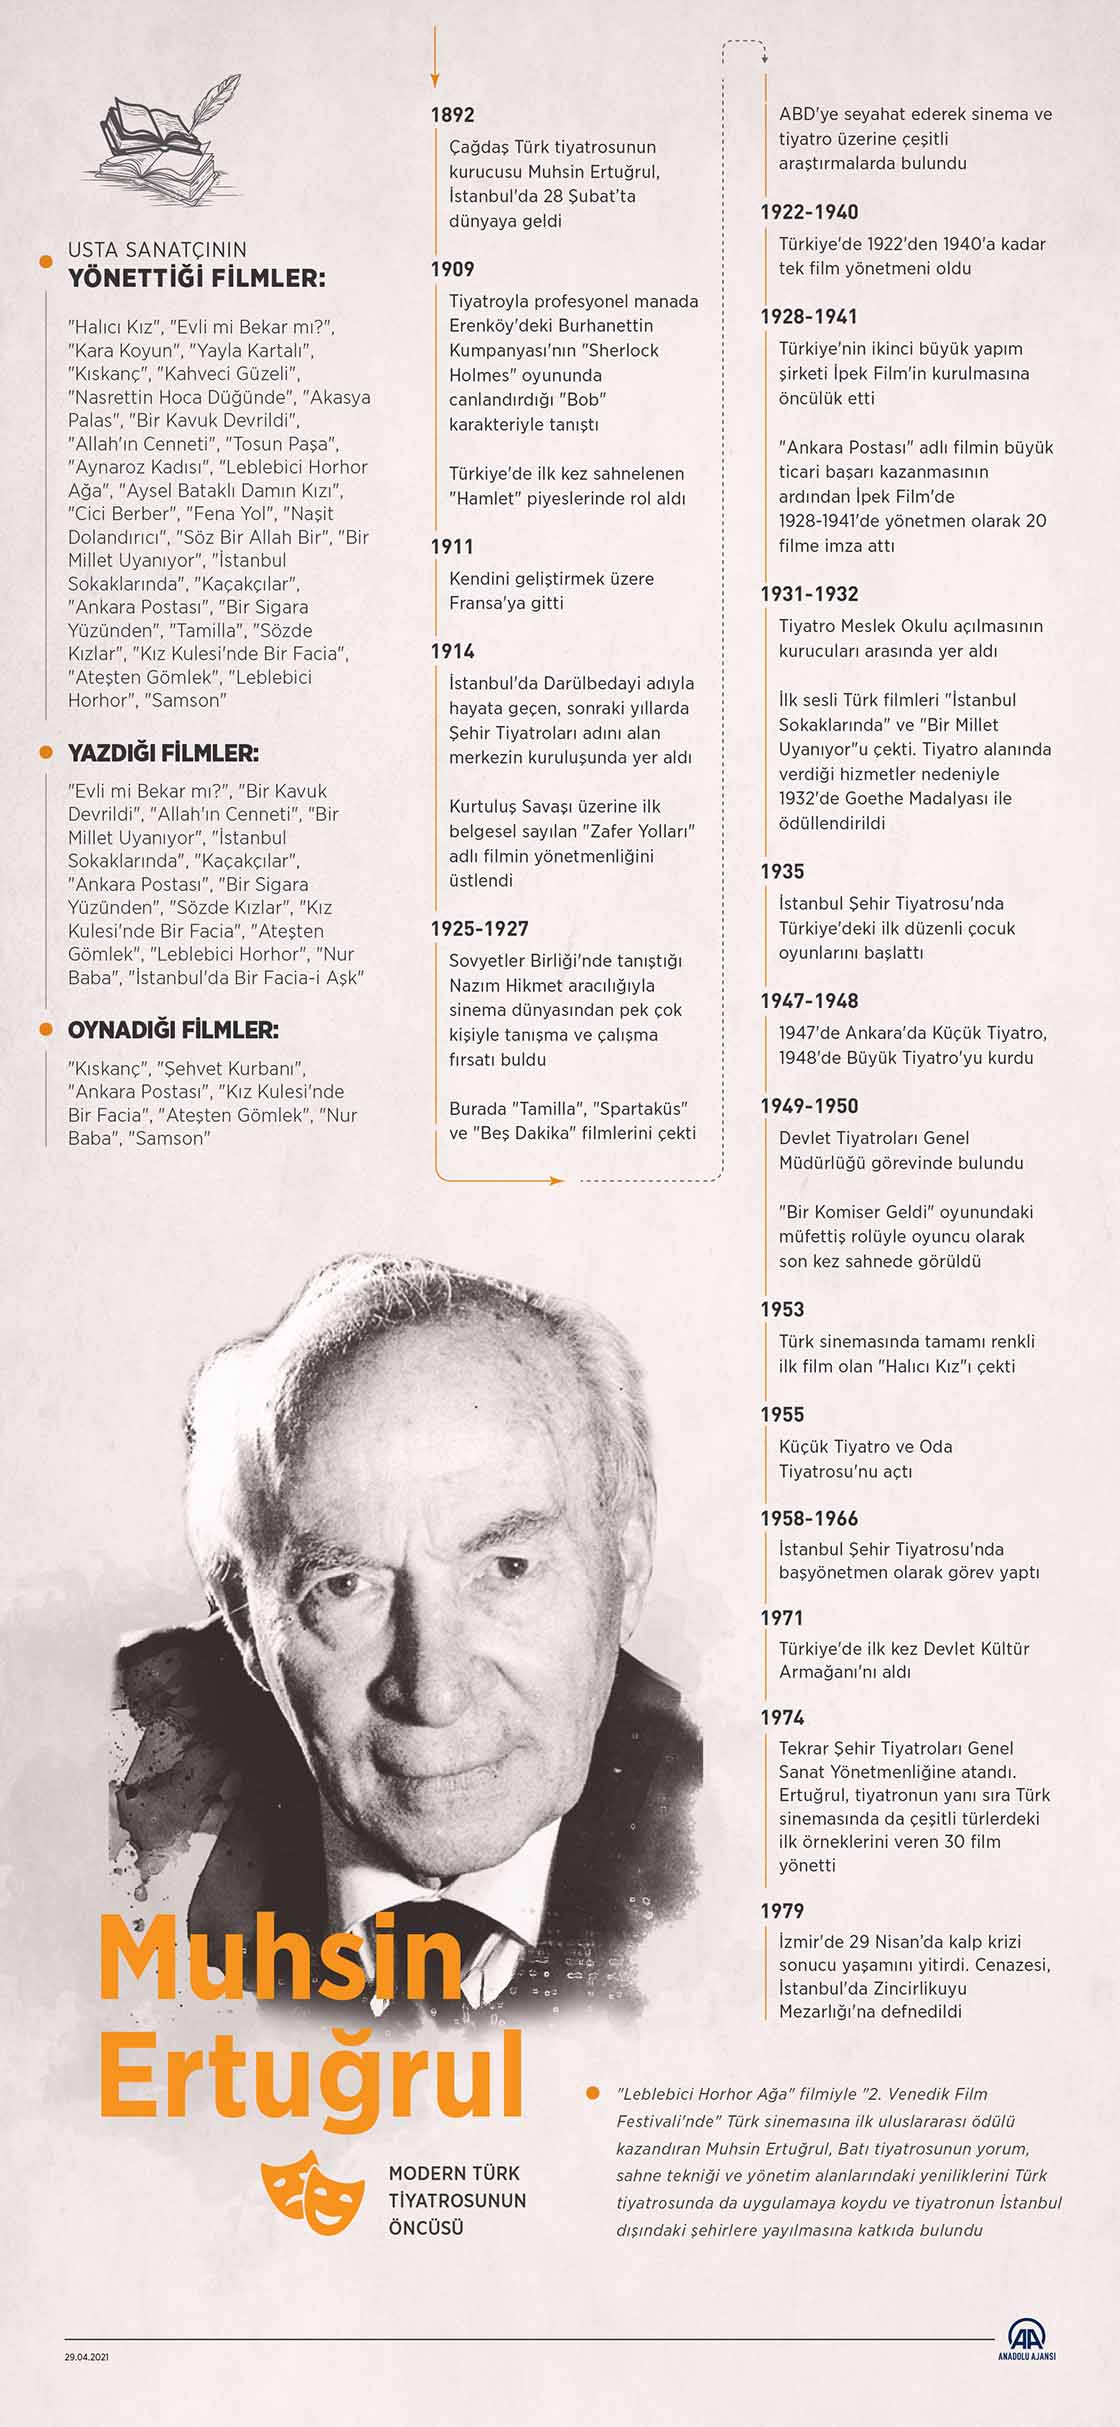  Modern Türk tiyatrosunun öncüsü Muhsin Ertuğrul